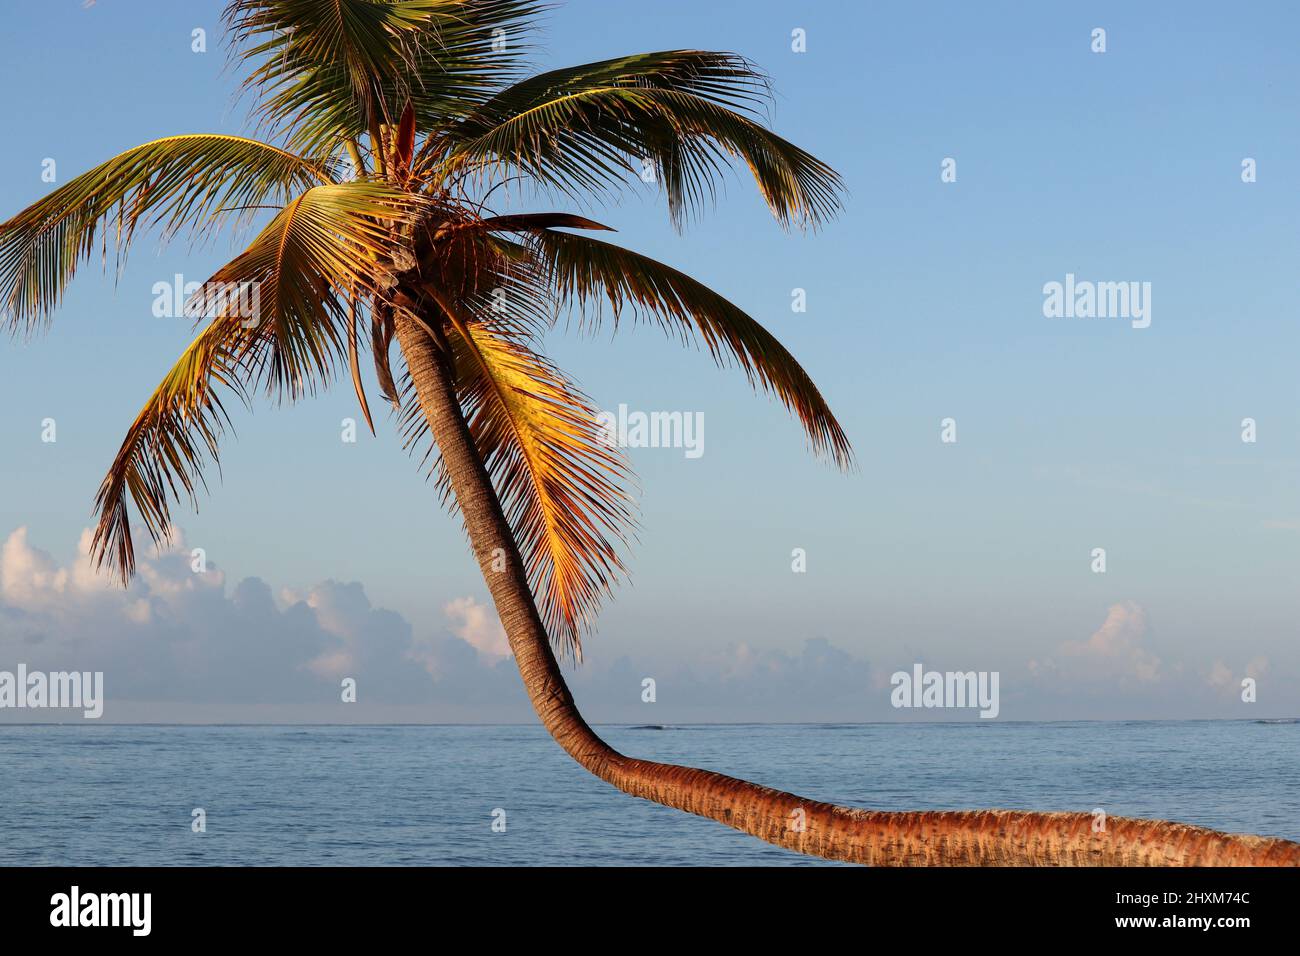 Palmiers à noix de coco sur fond de ciel et de mer. Plage tropicale, vacances sur la côte paradisiaque Banque D'Images